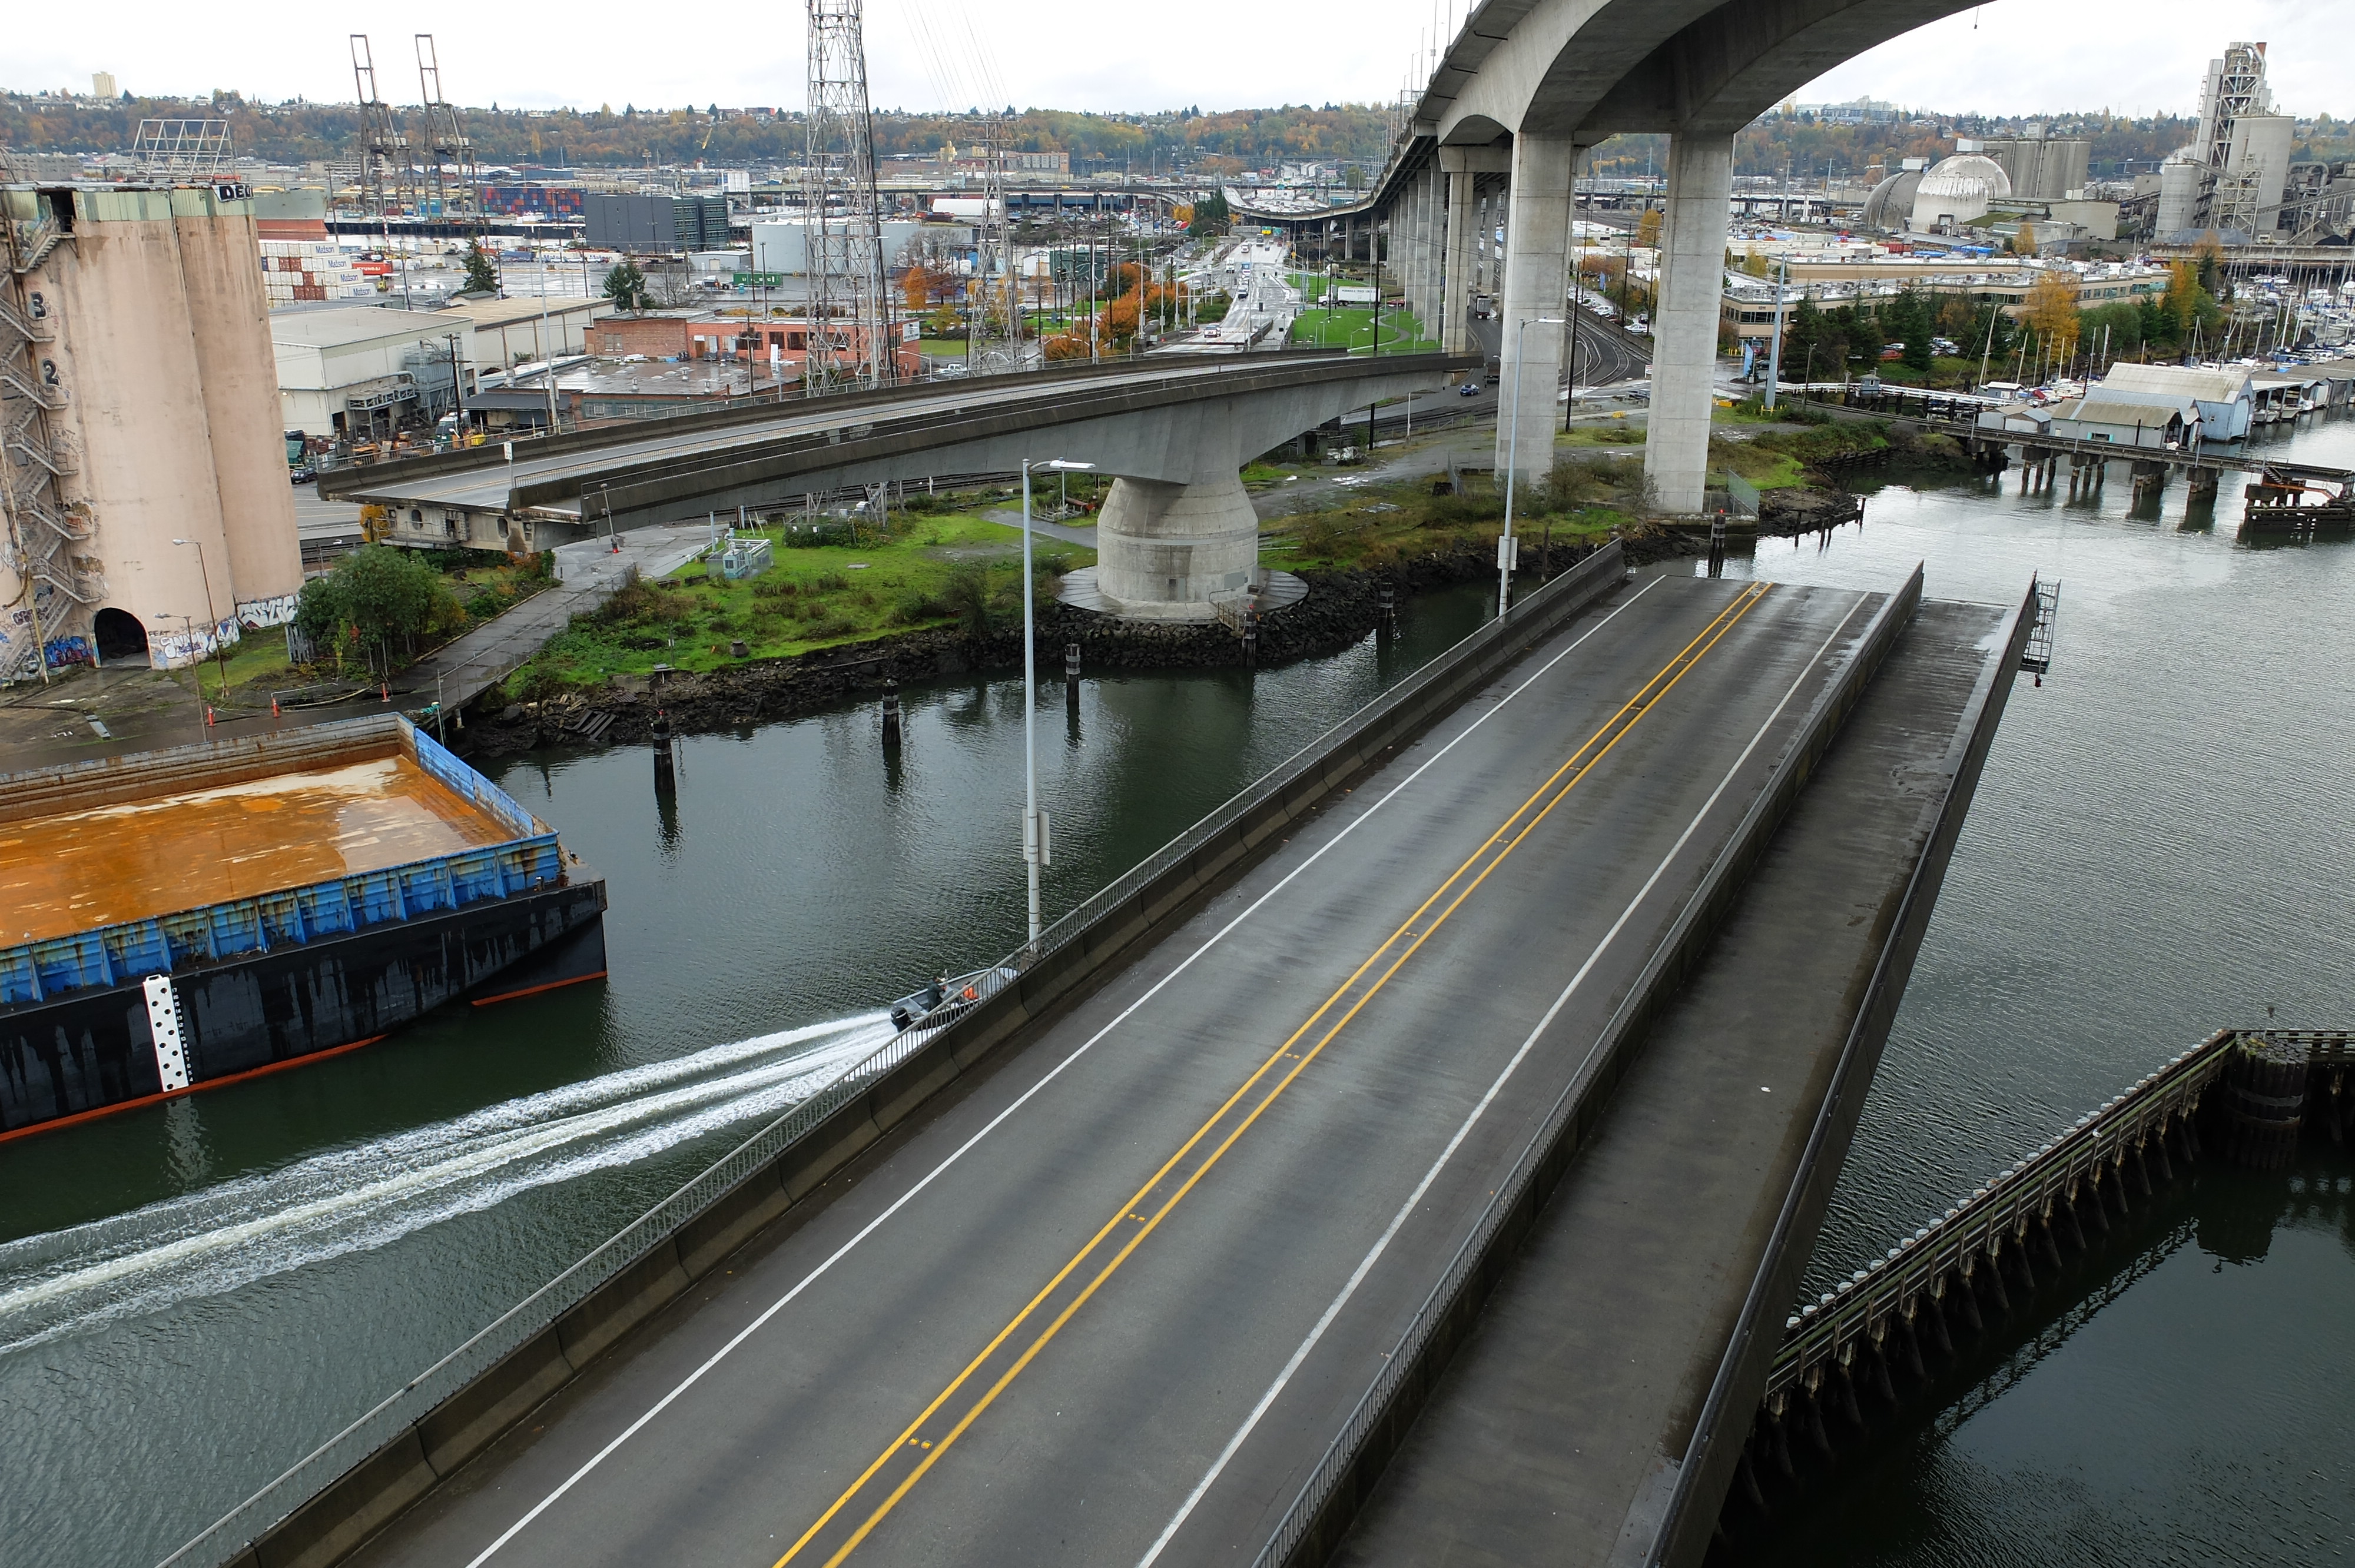 Low bridge swings open for maritime traffic